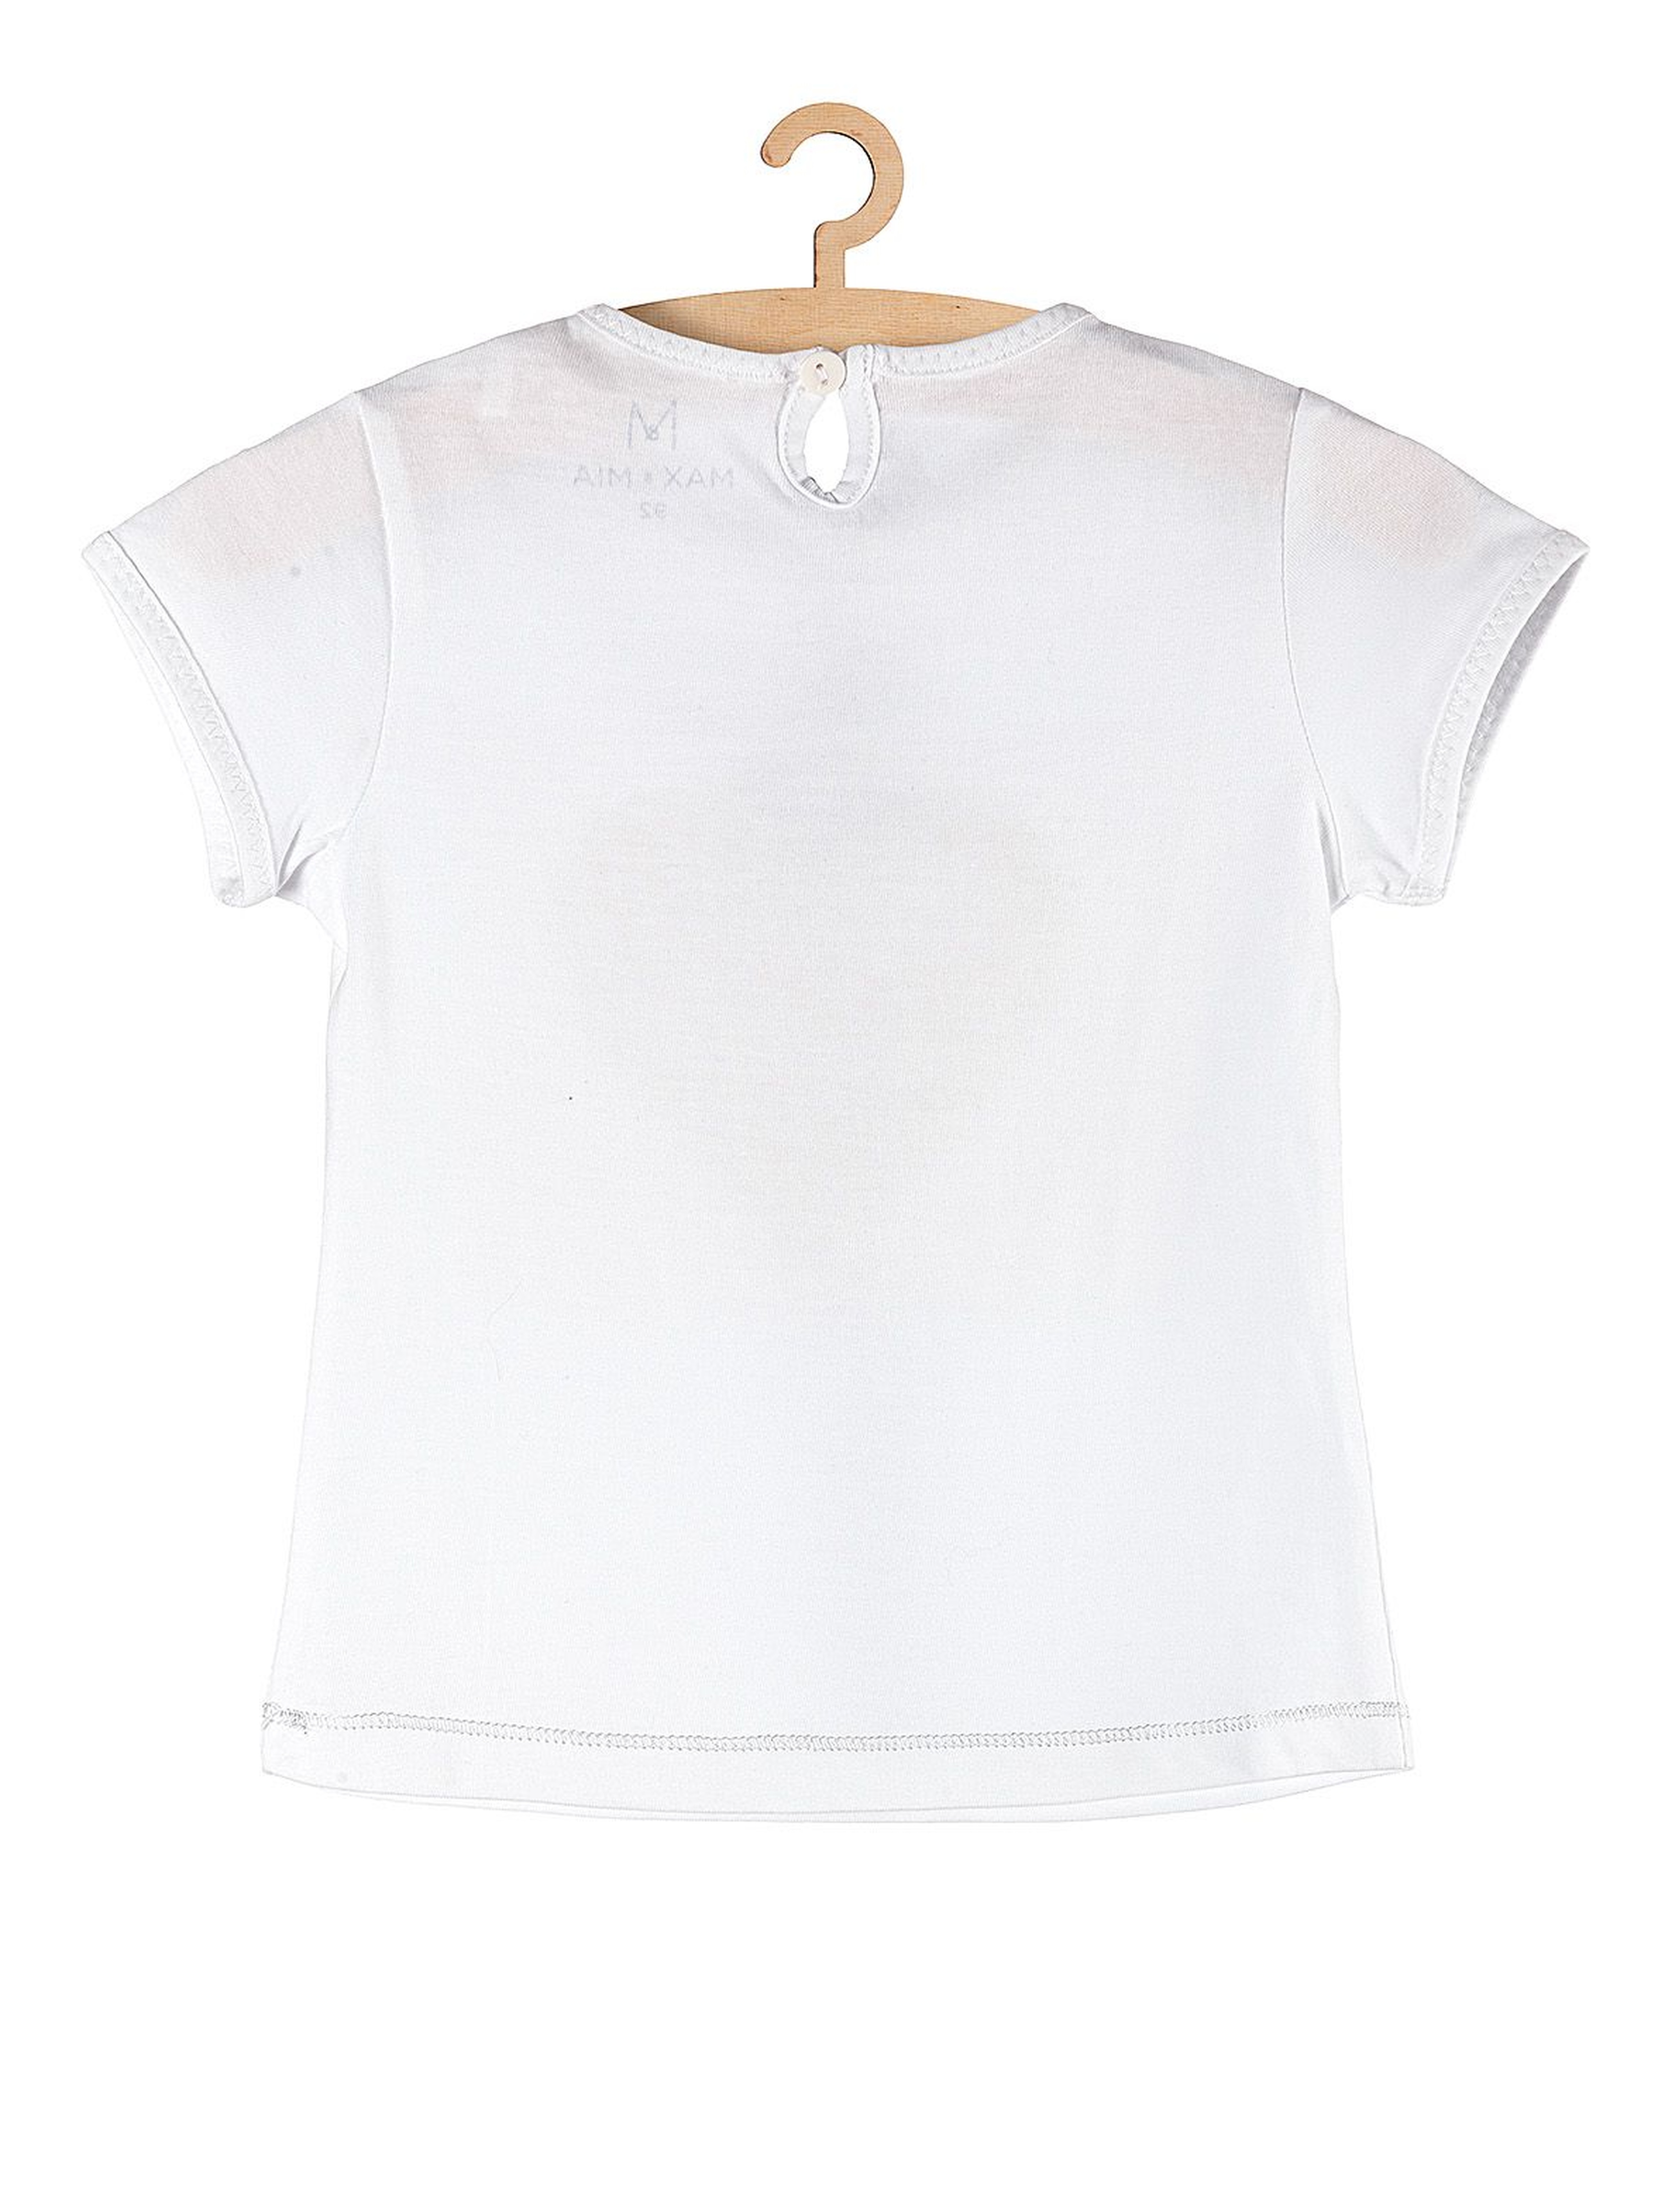 T-shirt dziewczęcy biały z serduszkiem